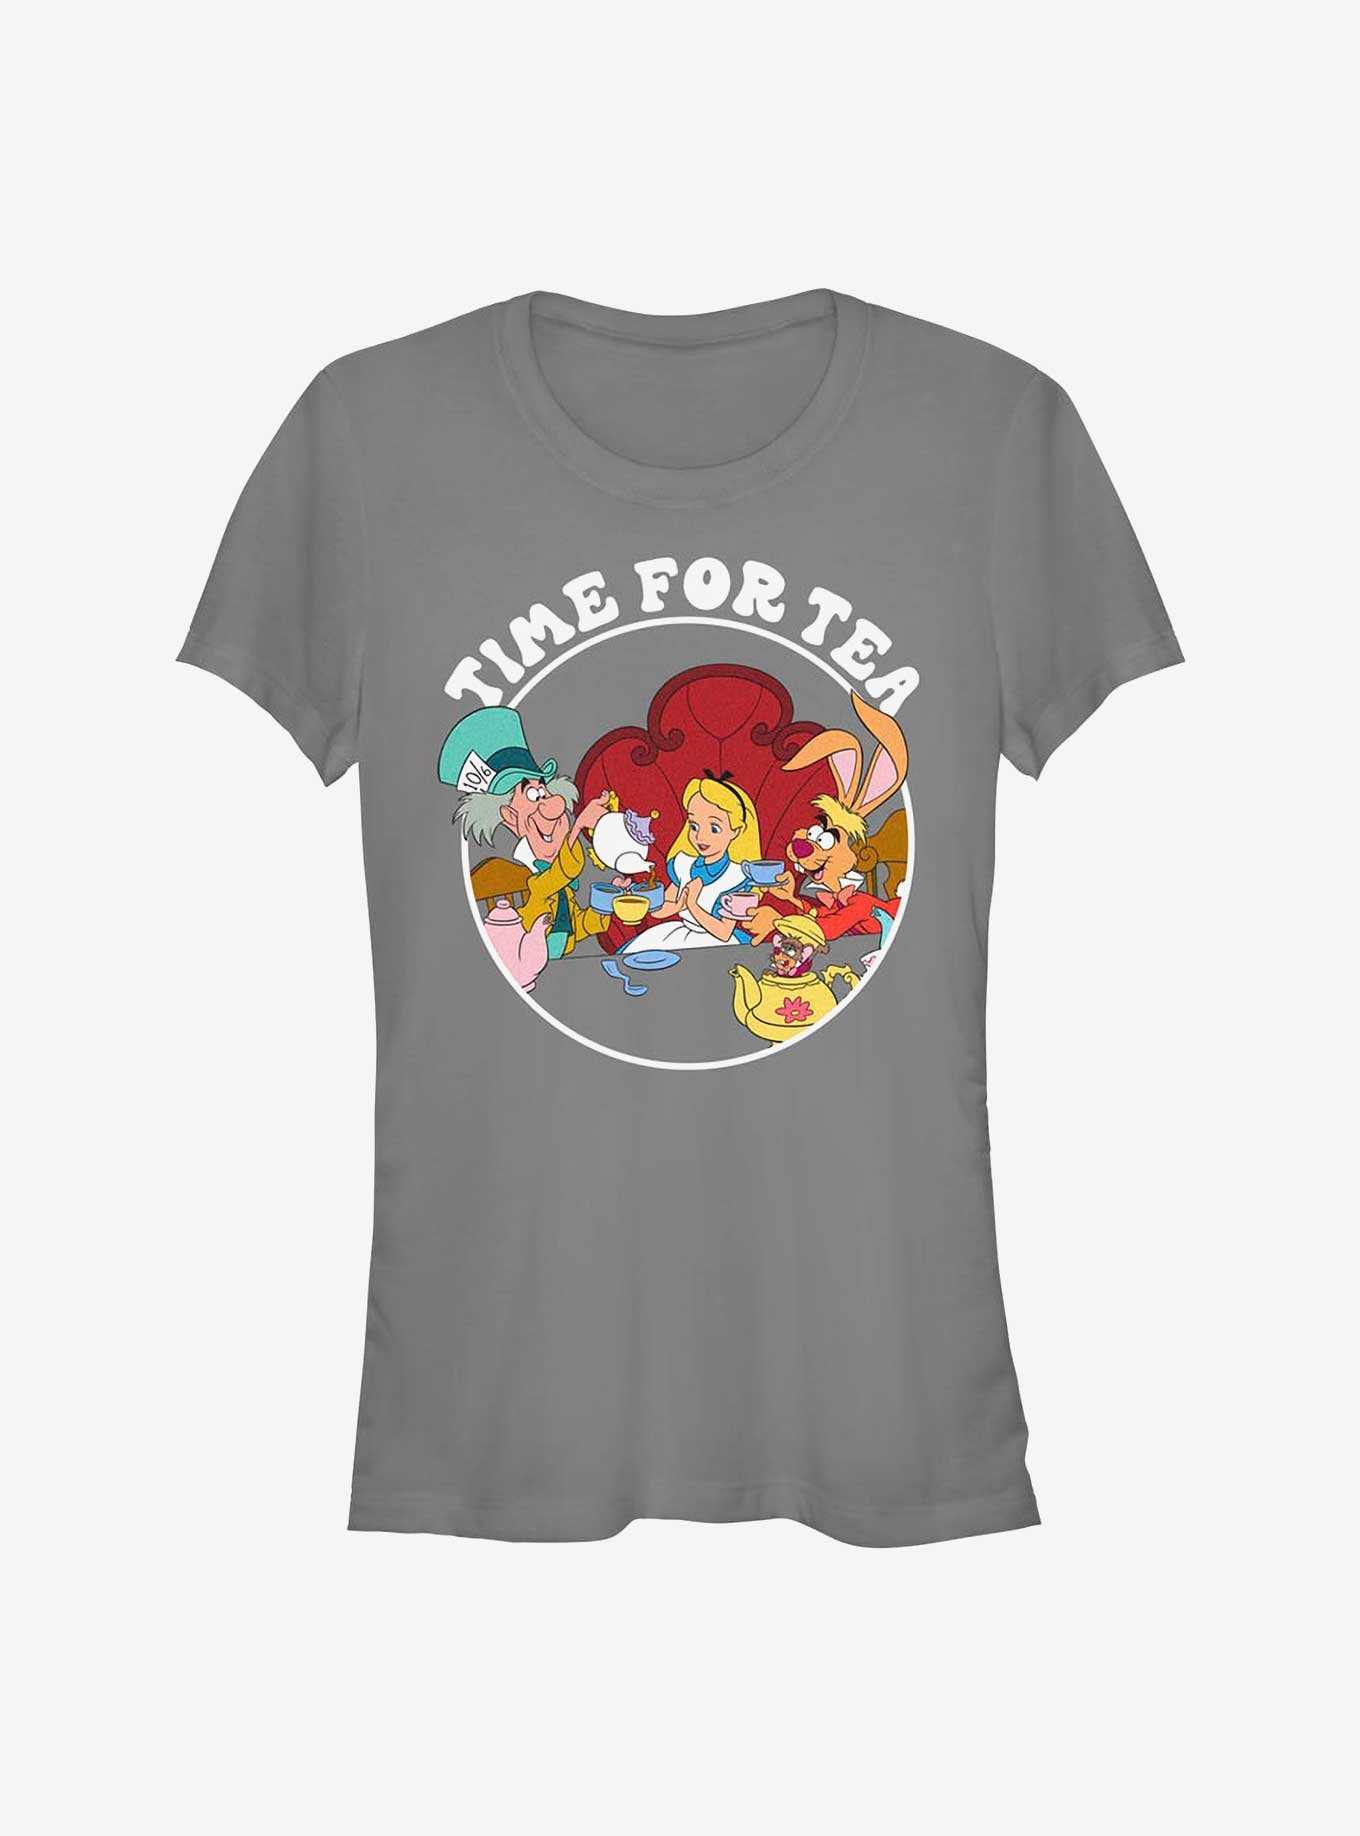 Disney Alice In Wonderland Mad Hatter Tea Time Girls T-Shirt, , hi-res